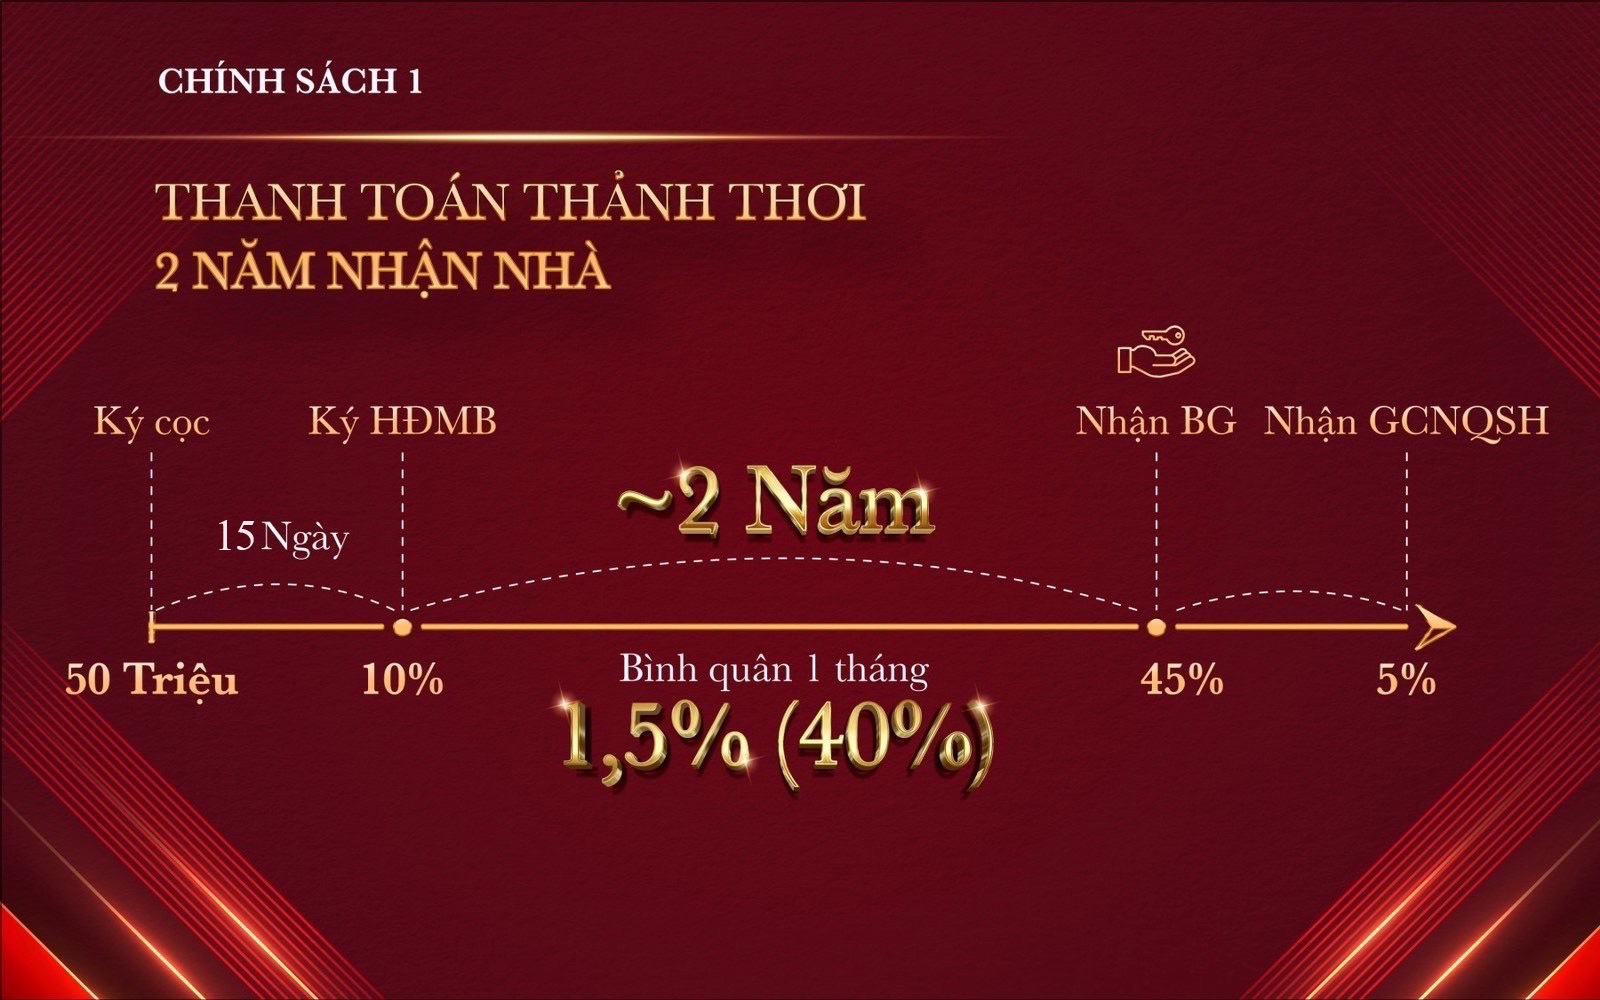 chinh-sach-ban-hang-glory-heights-2